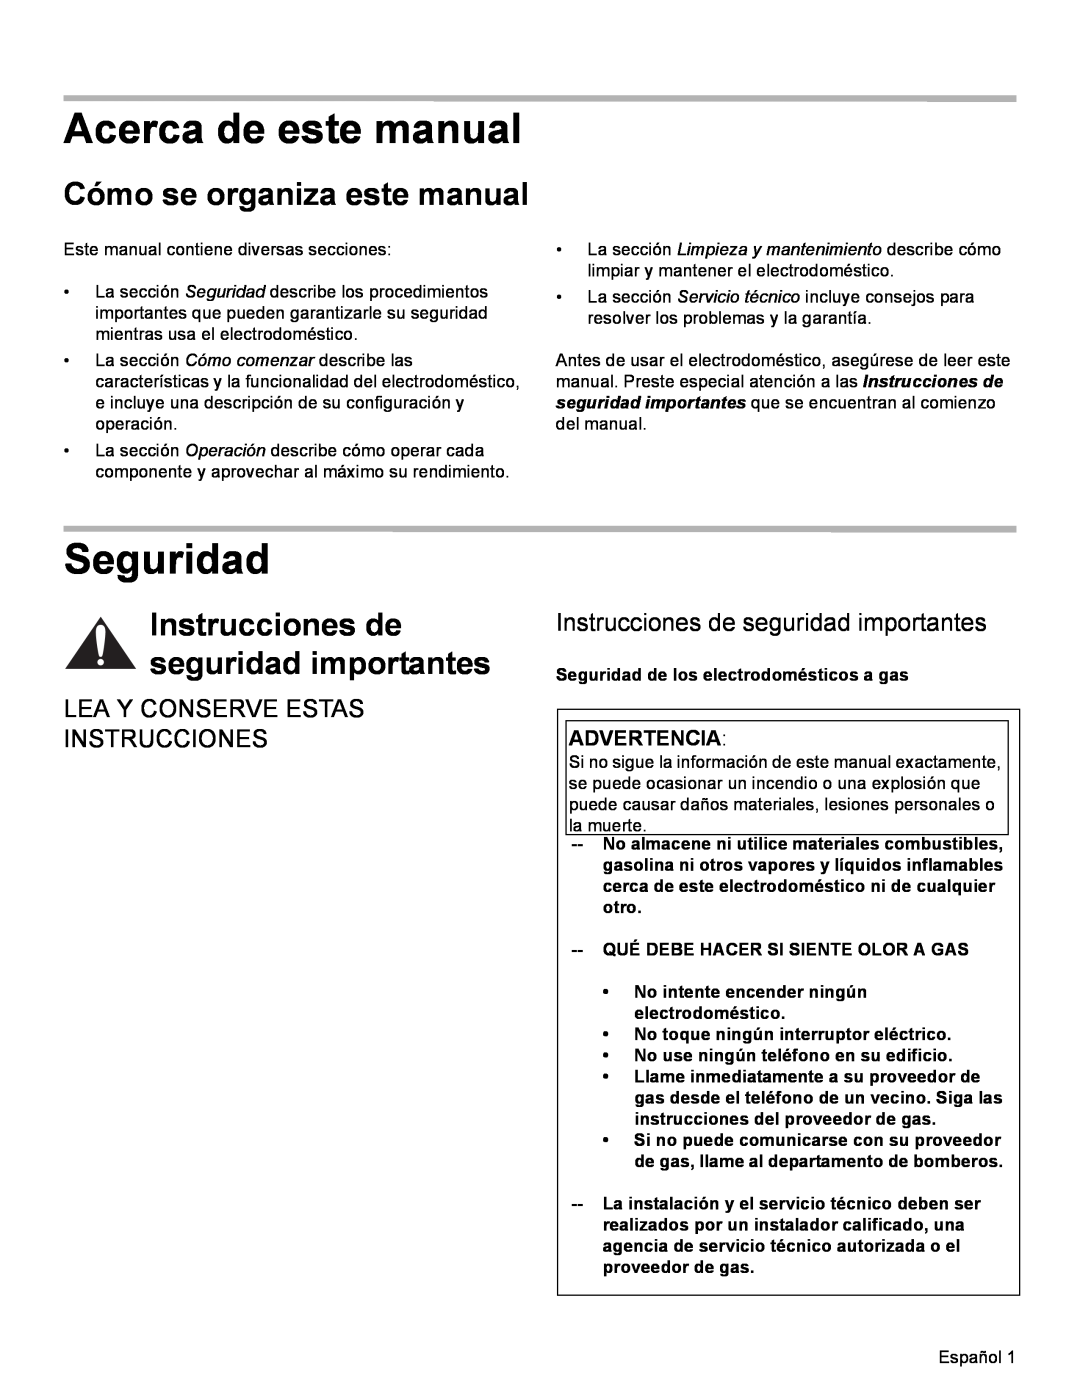 Bosch Appliances SGS Acerca de este manual, Seguridad, Cómo se organiza este manual, Lea Y Conserve Estas Instrucciones 